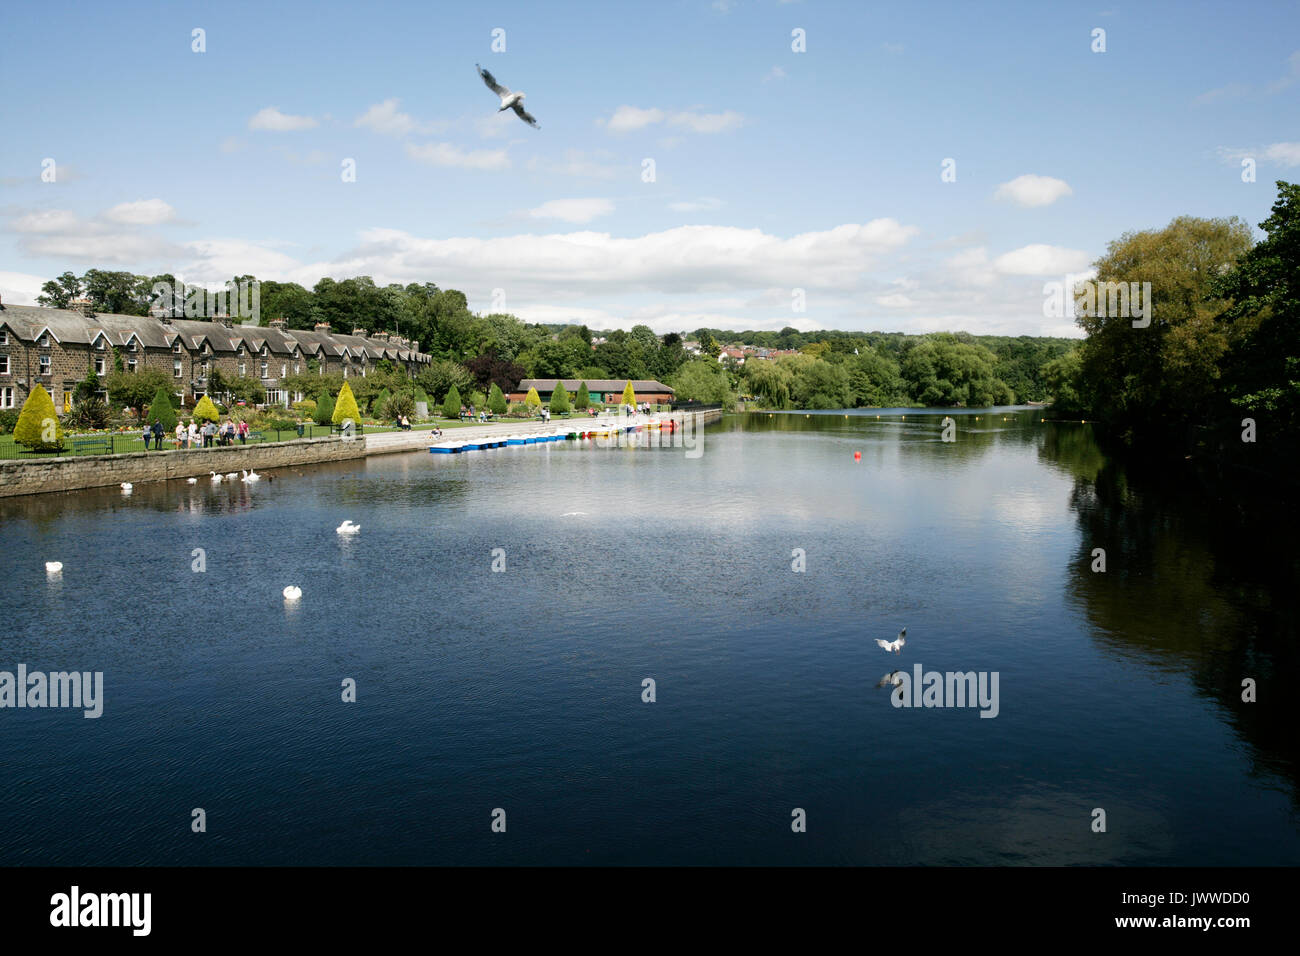 Otley, Leeds, Großbritannien. 14. August 2017. Ruderboote auf River Wharfe, erstmals seit 2001 Credit: Les Wagstaff/Alamy leben Nachrichten Stockfoto